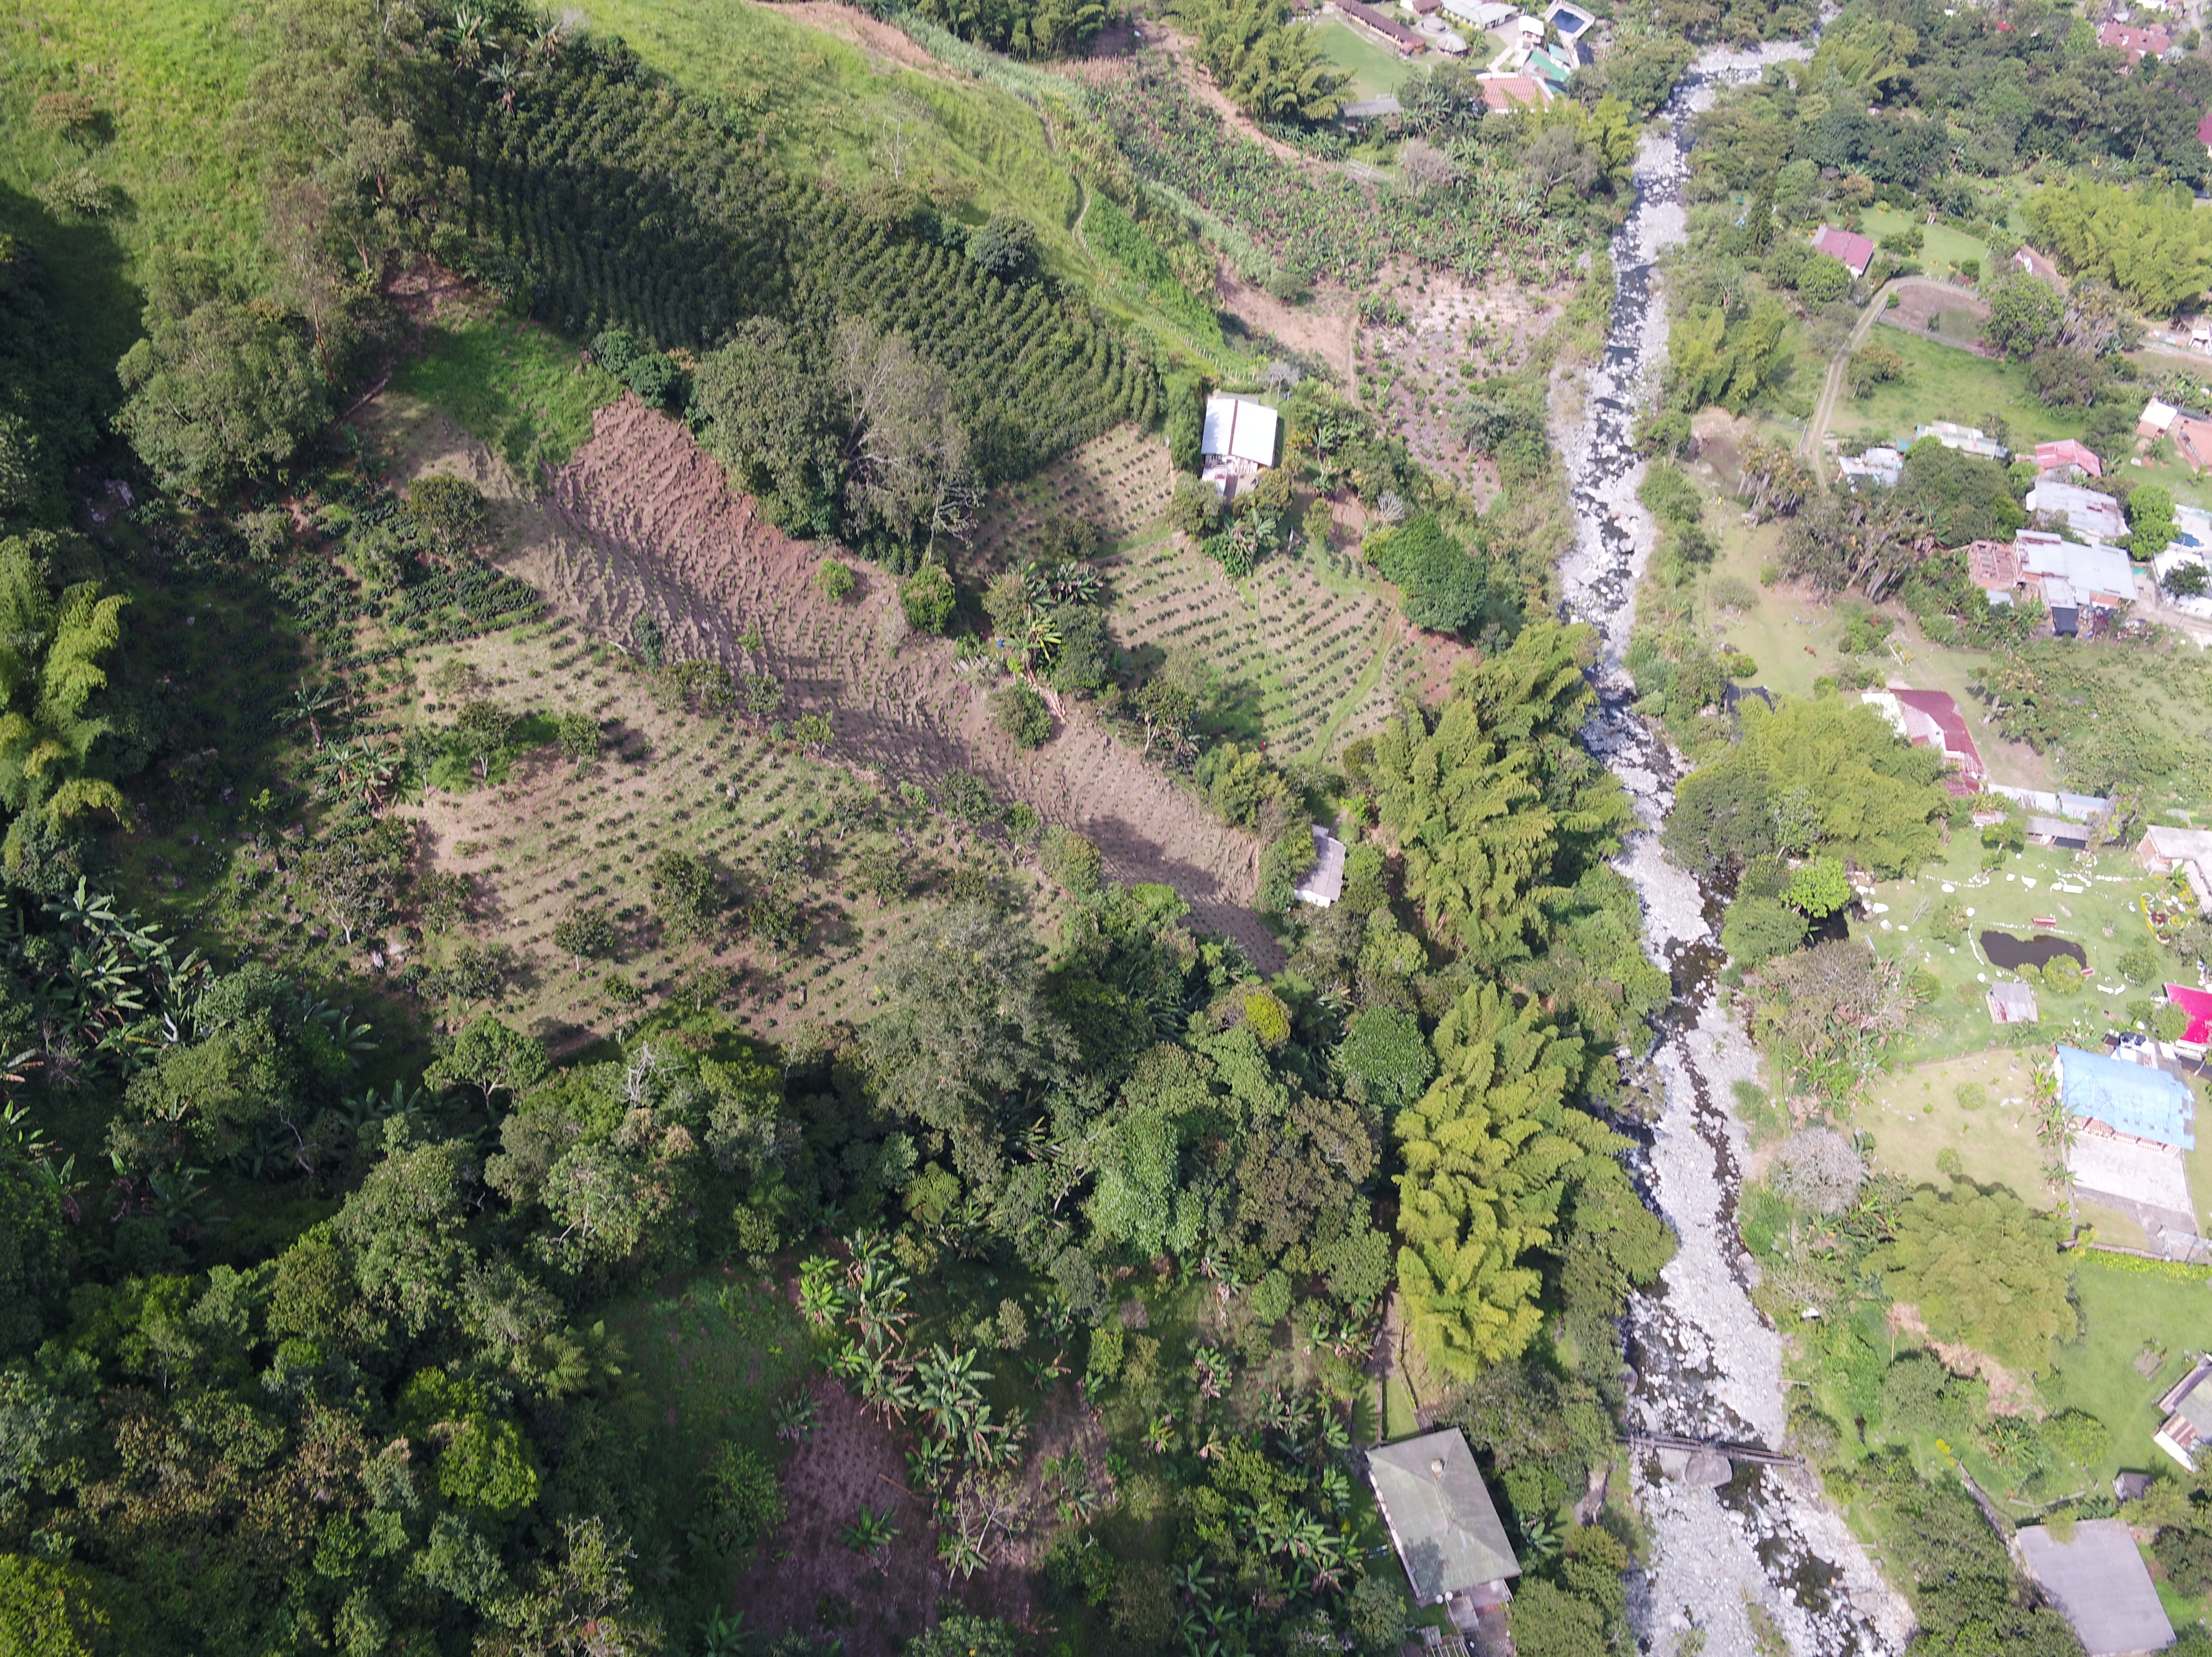 Imagen aérea de un sector de la cabecera del corregimiento de Pance.